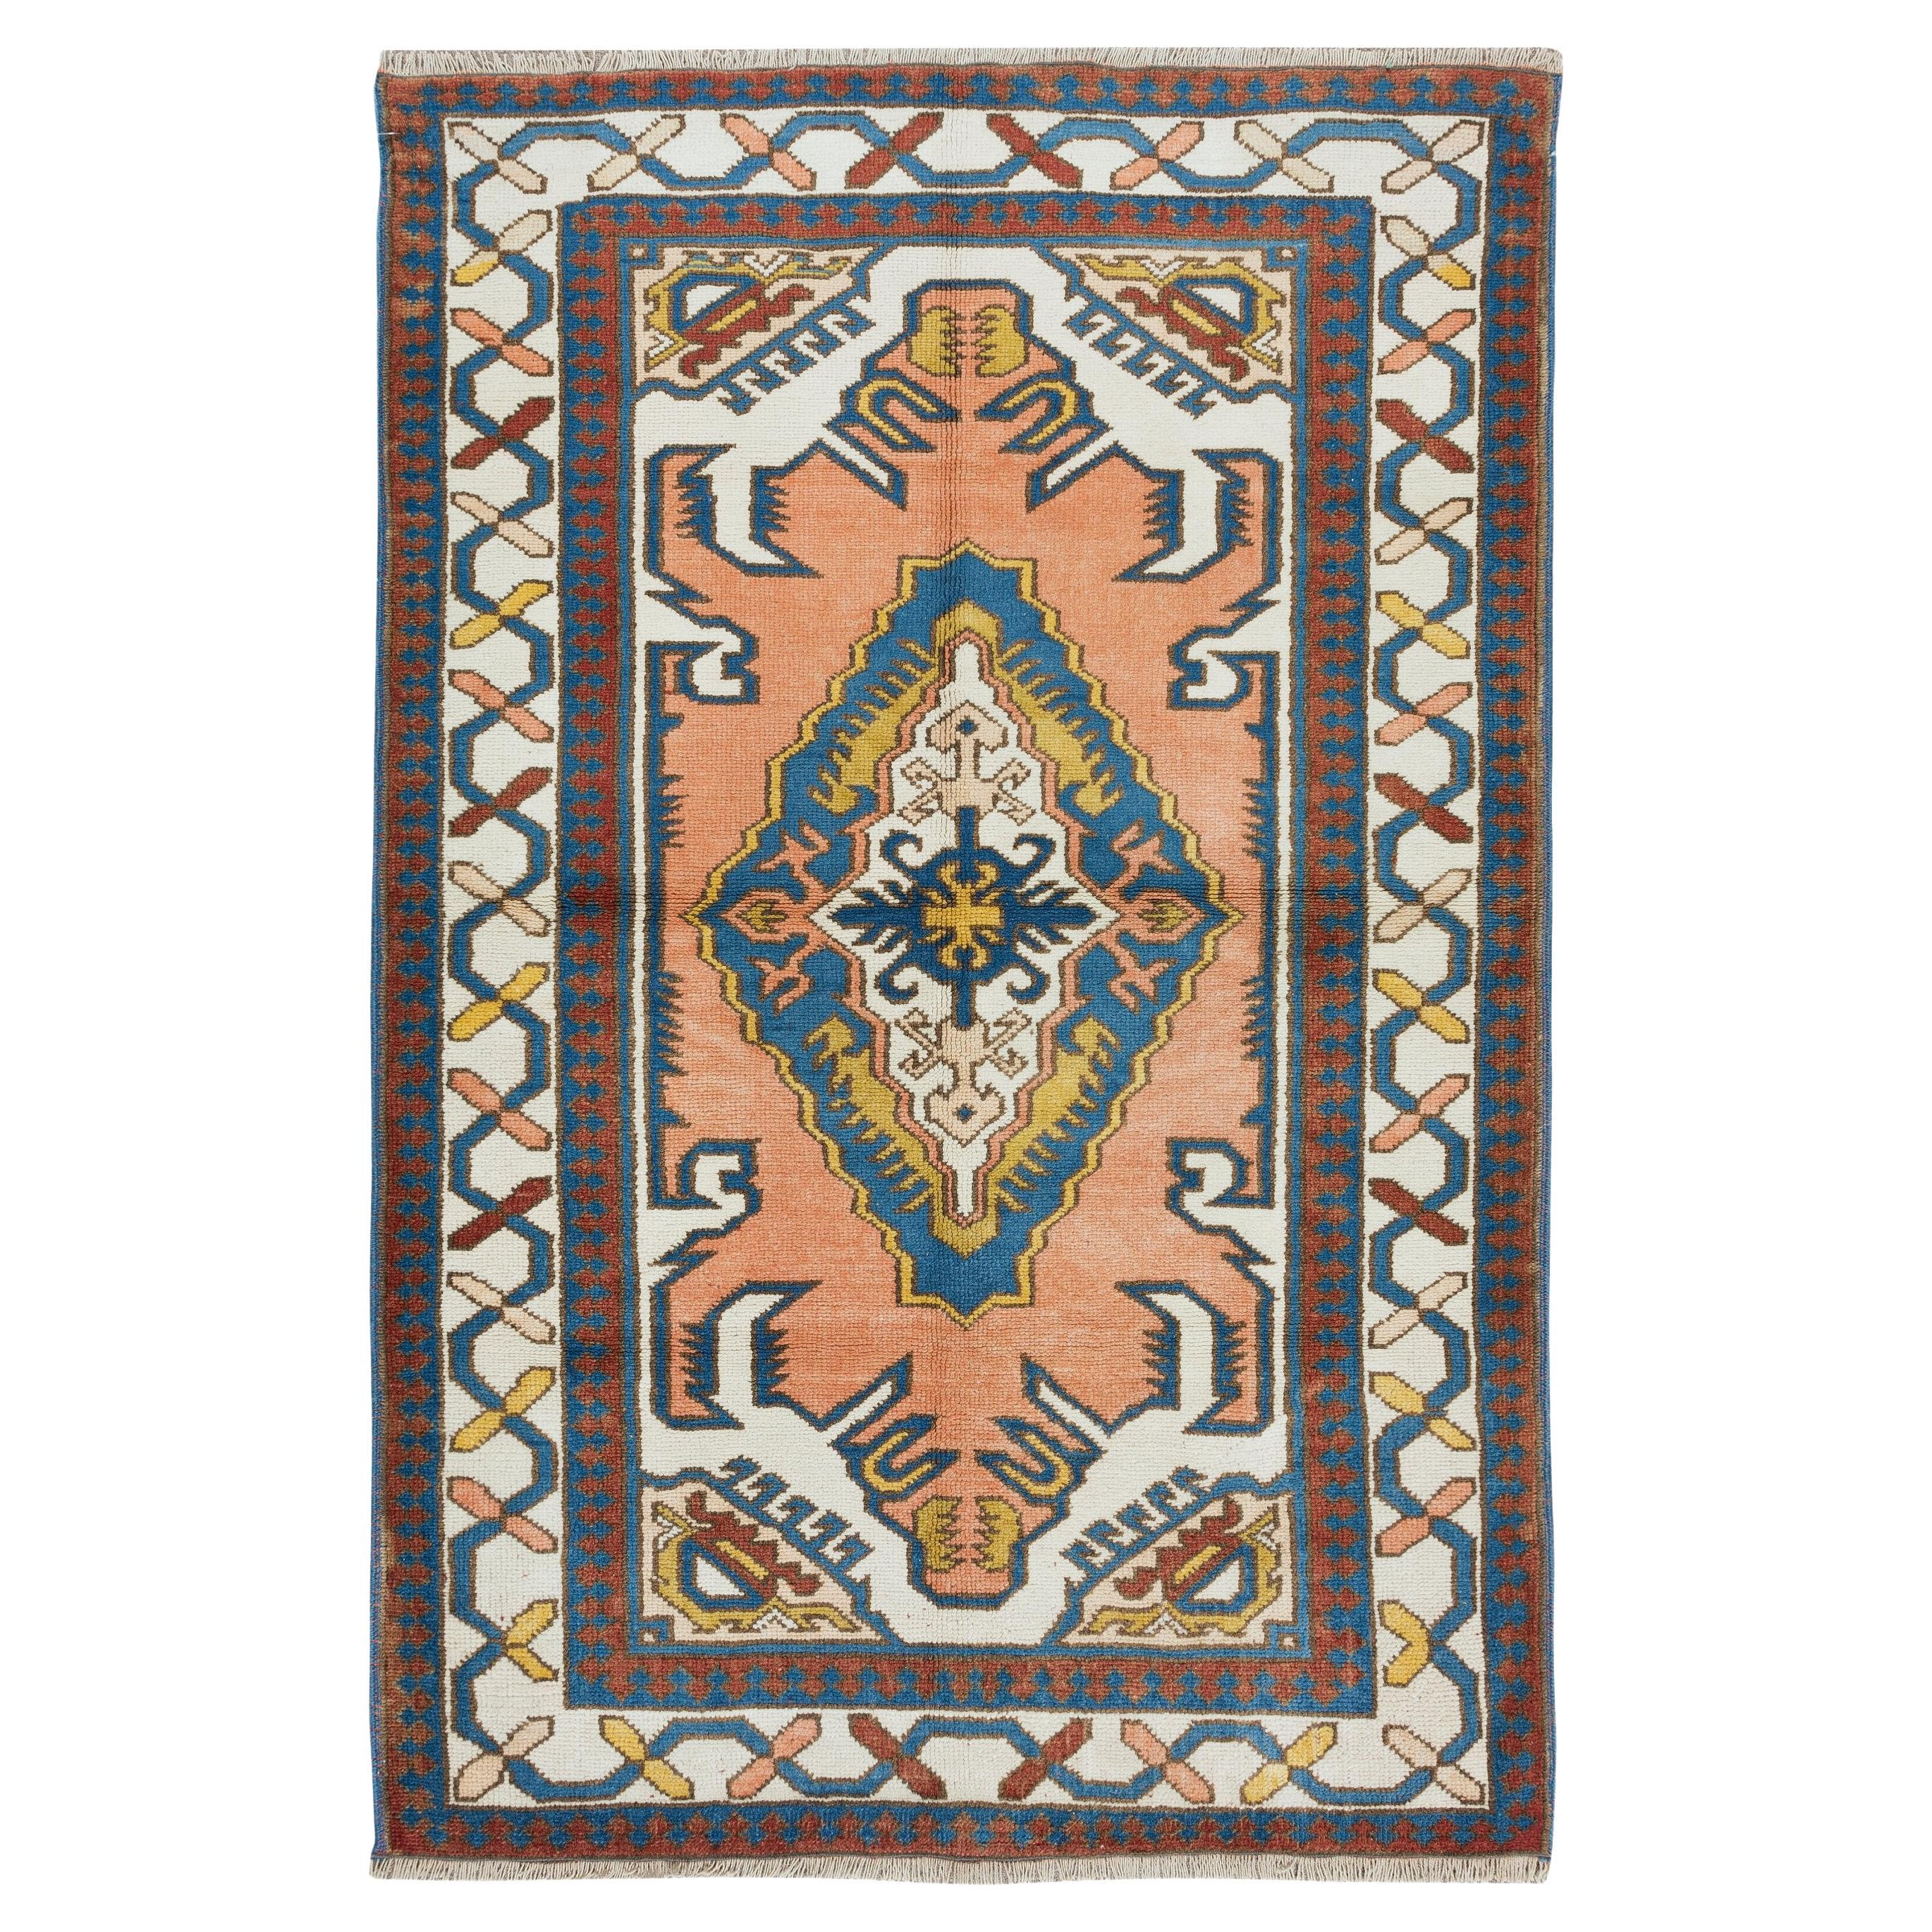 4x6 Ft Mid-Century Handmade Turkish Traditional Wool Rug with Geometric Design (tapis de laine traditionnel turc du milieu du siècle à motifs géométriques)